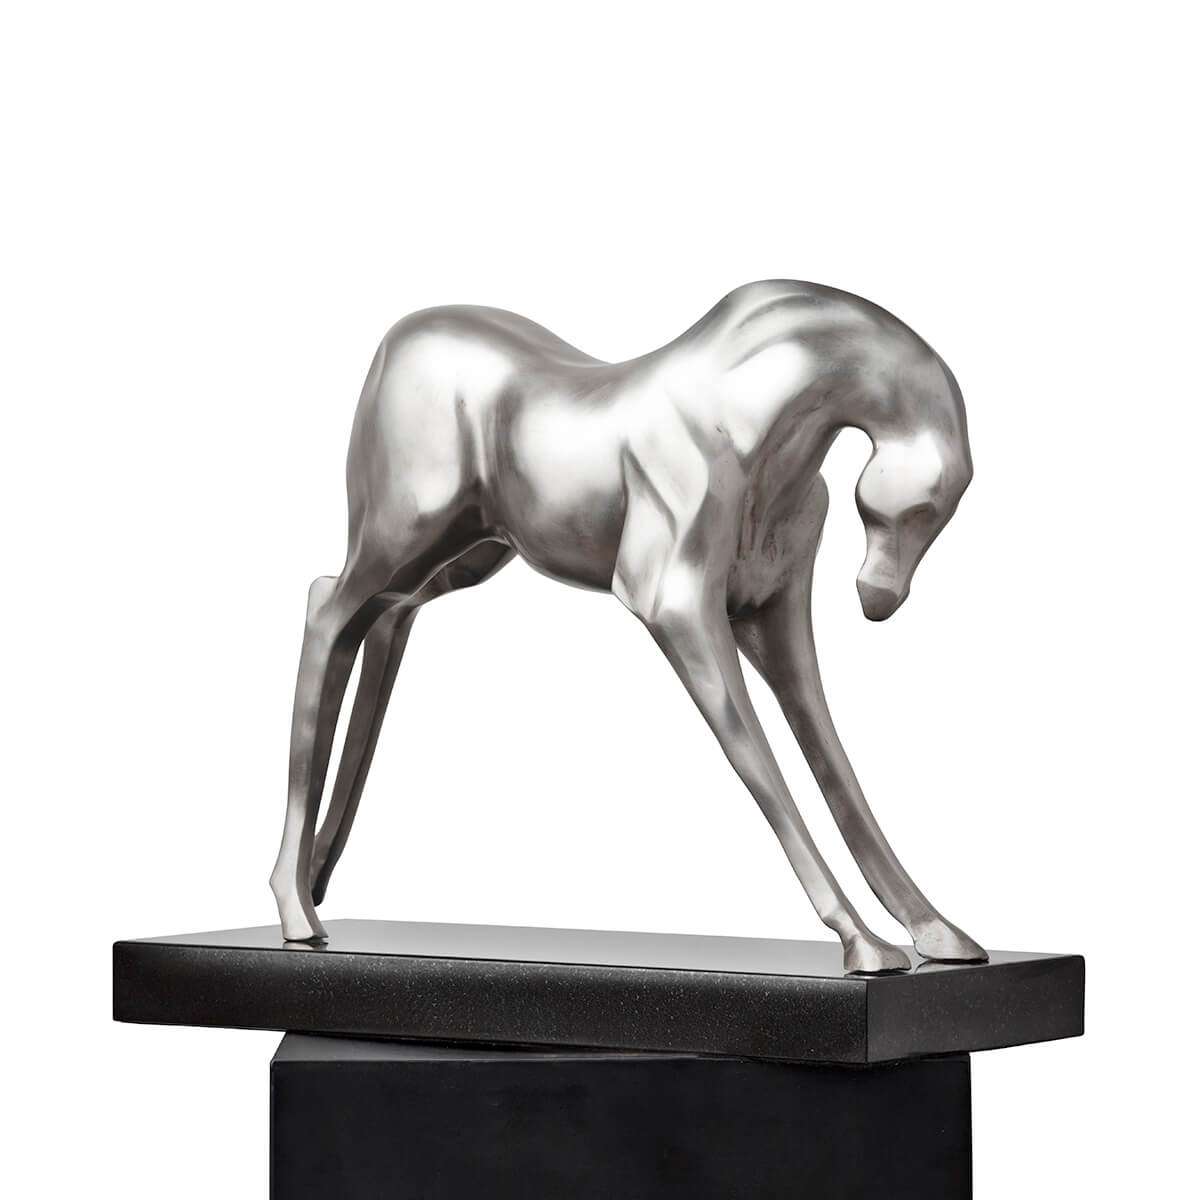 Robert-Helle-Sculpture-Gallery-Horse-2-1200x1200